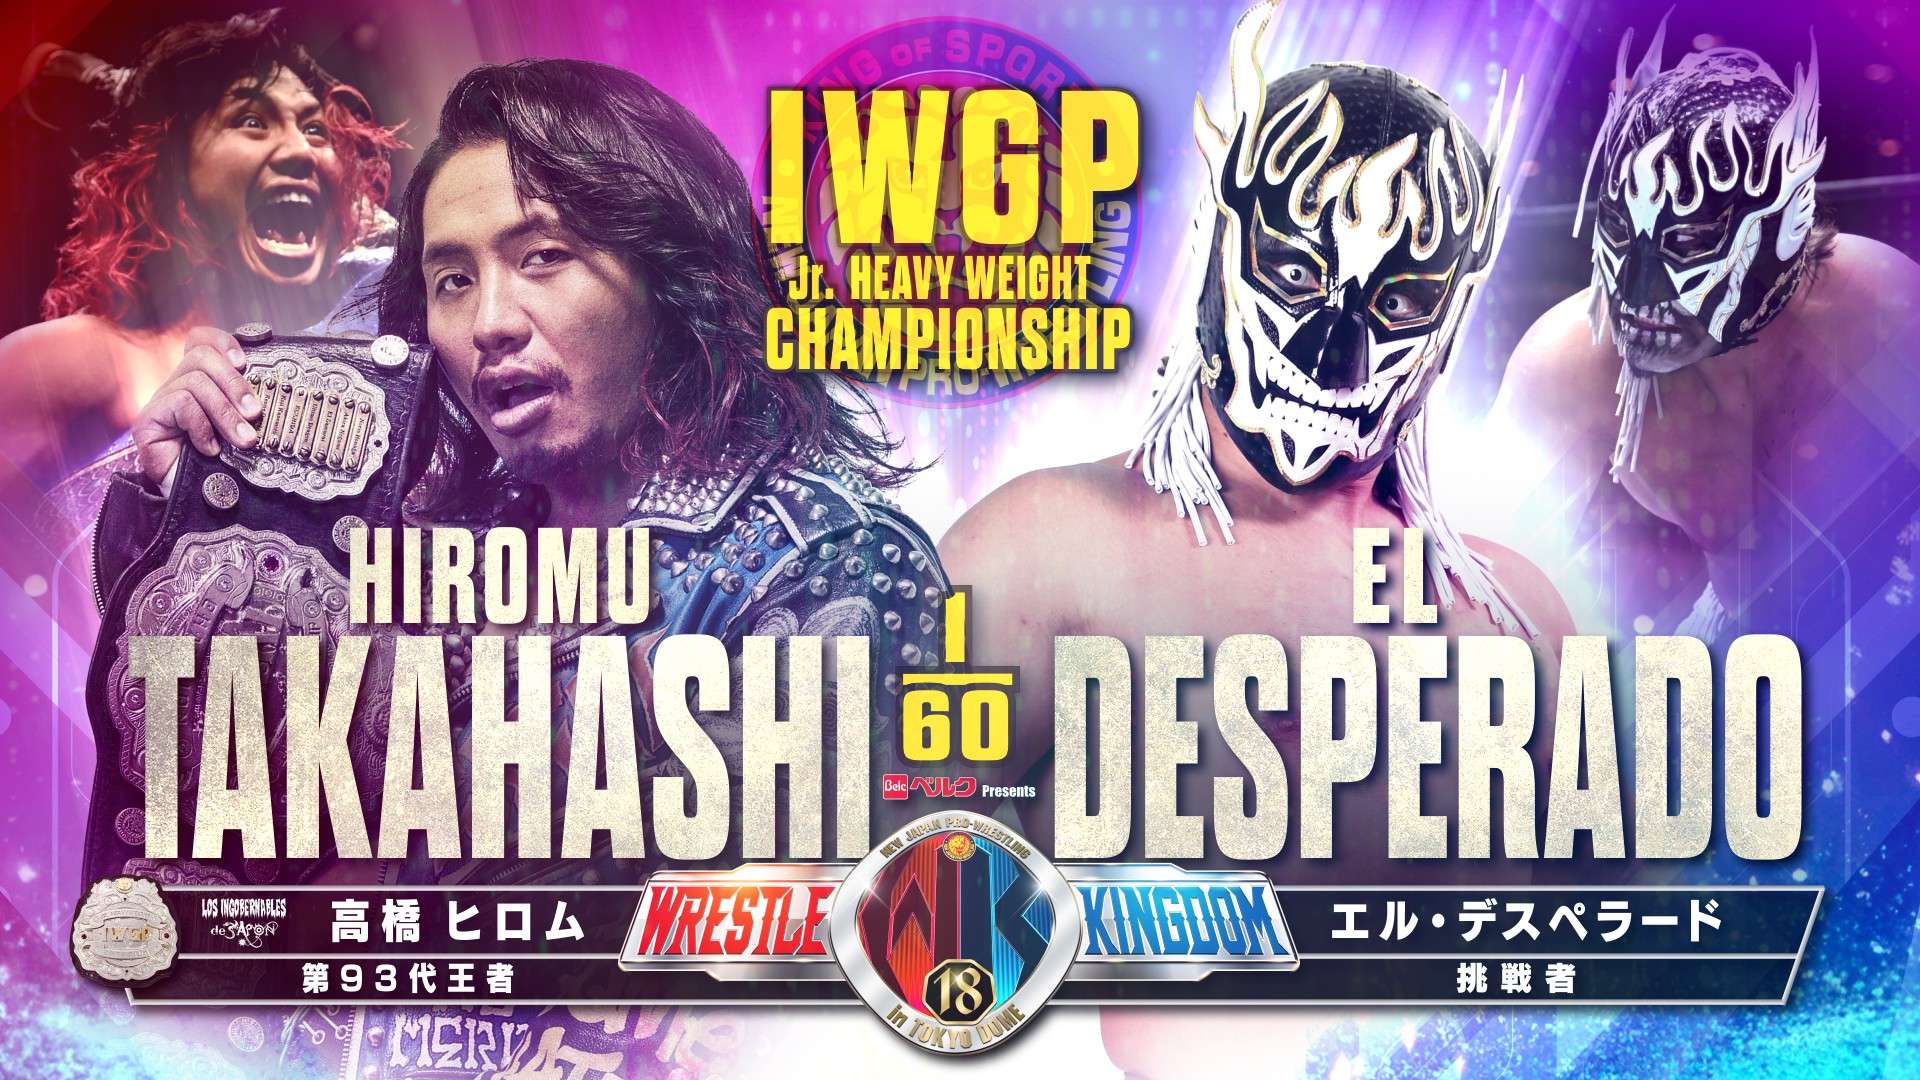 El Desperado repite triunfo sobre Takahashi en Wrestle Kingdom